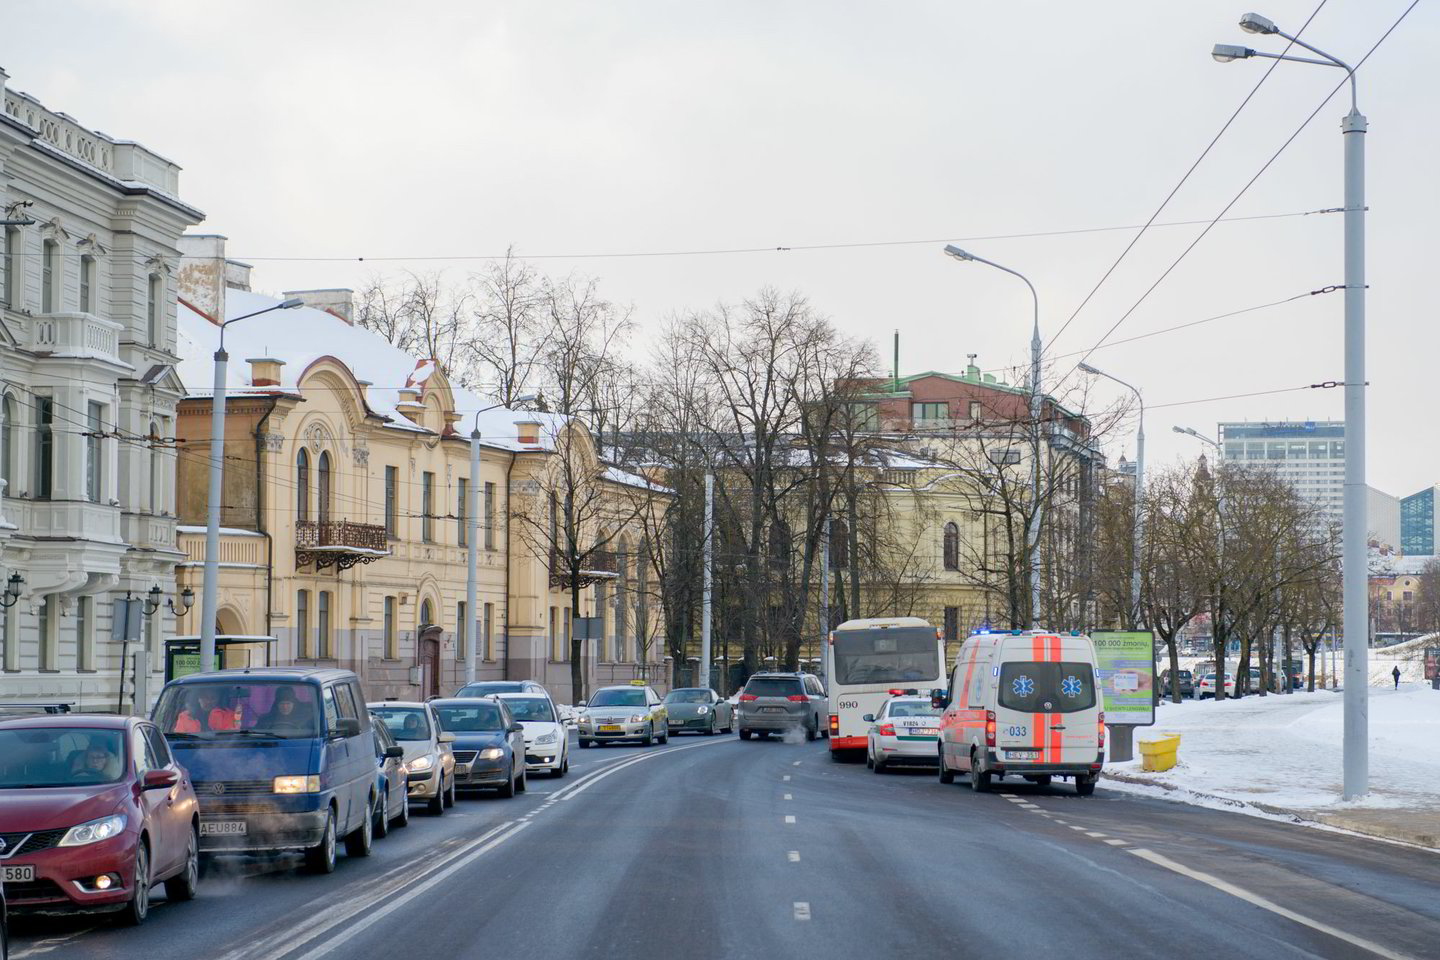  Vilniaus policijai neaišku, kaip iš autobuso iškrito keleivis, pareigūnai prašo jūsų pagalbos.<br> J.Stacevičiaus nuotr.